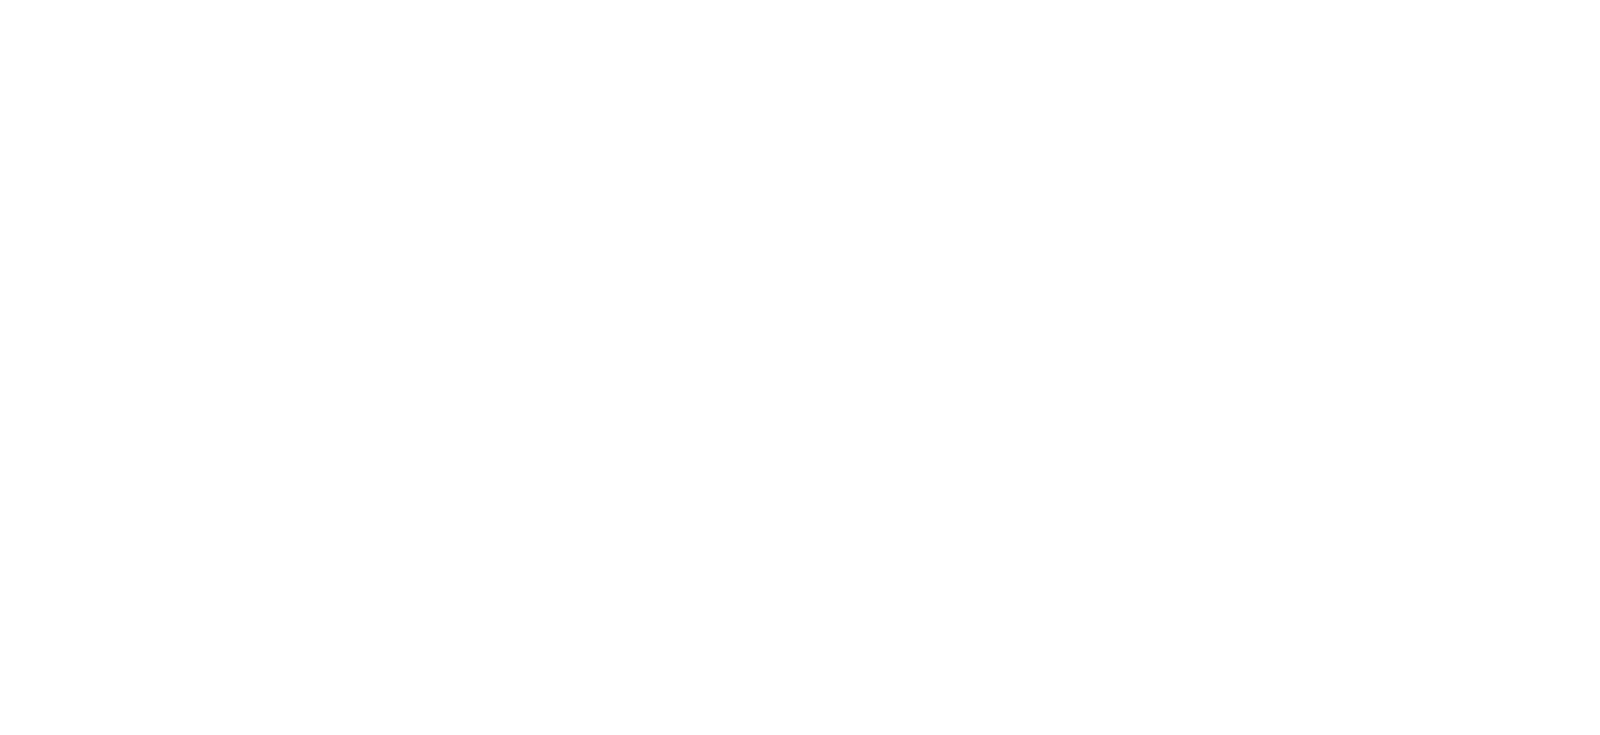 Спортивная площадка для выполнения нормативов ВФСК. Город Усмань , Липецкая область, август 2019